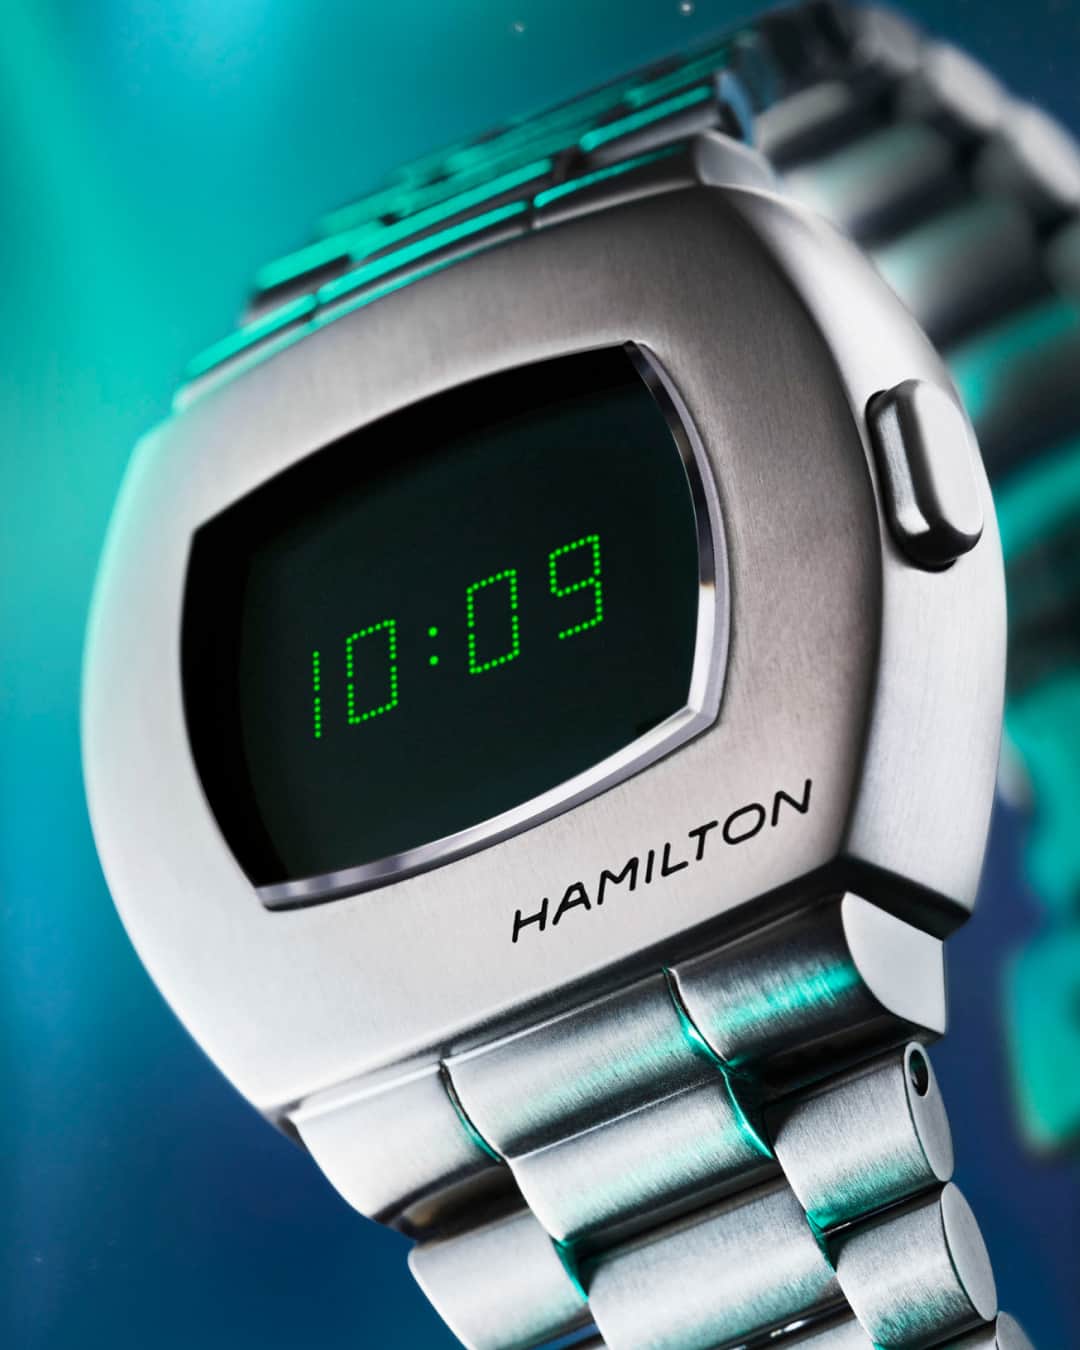 Hamilton Watchのインスタグラム